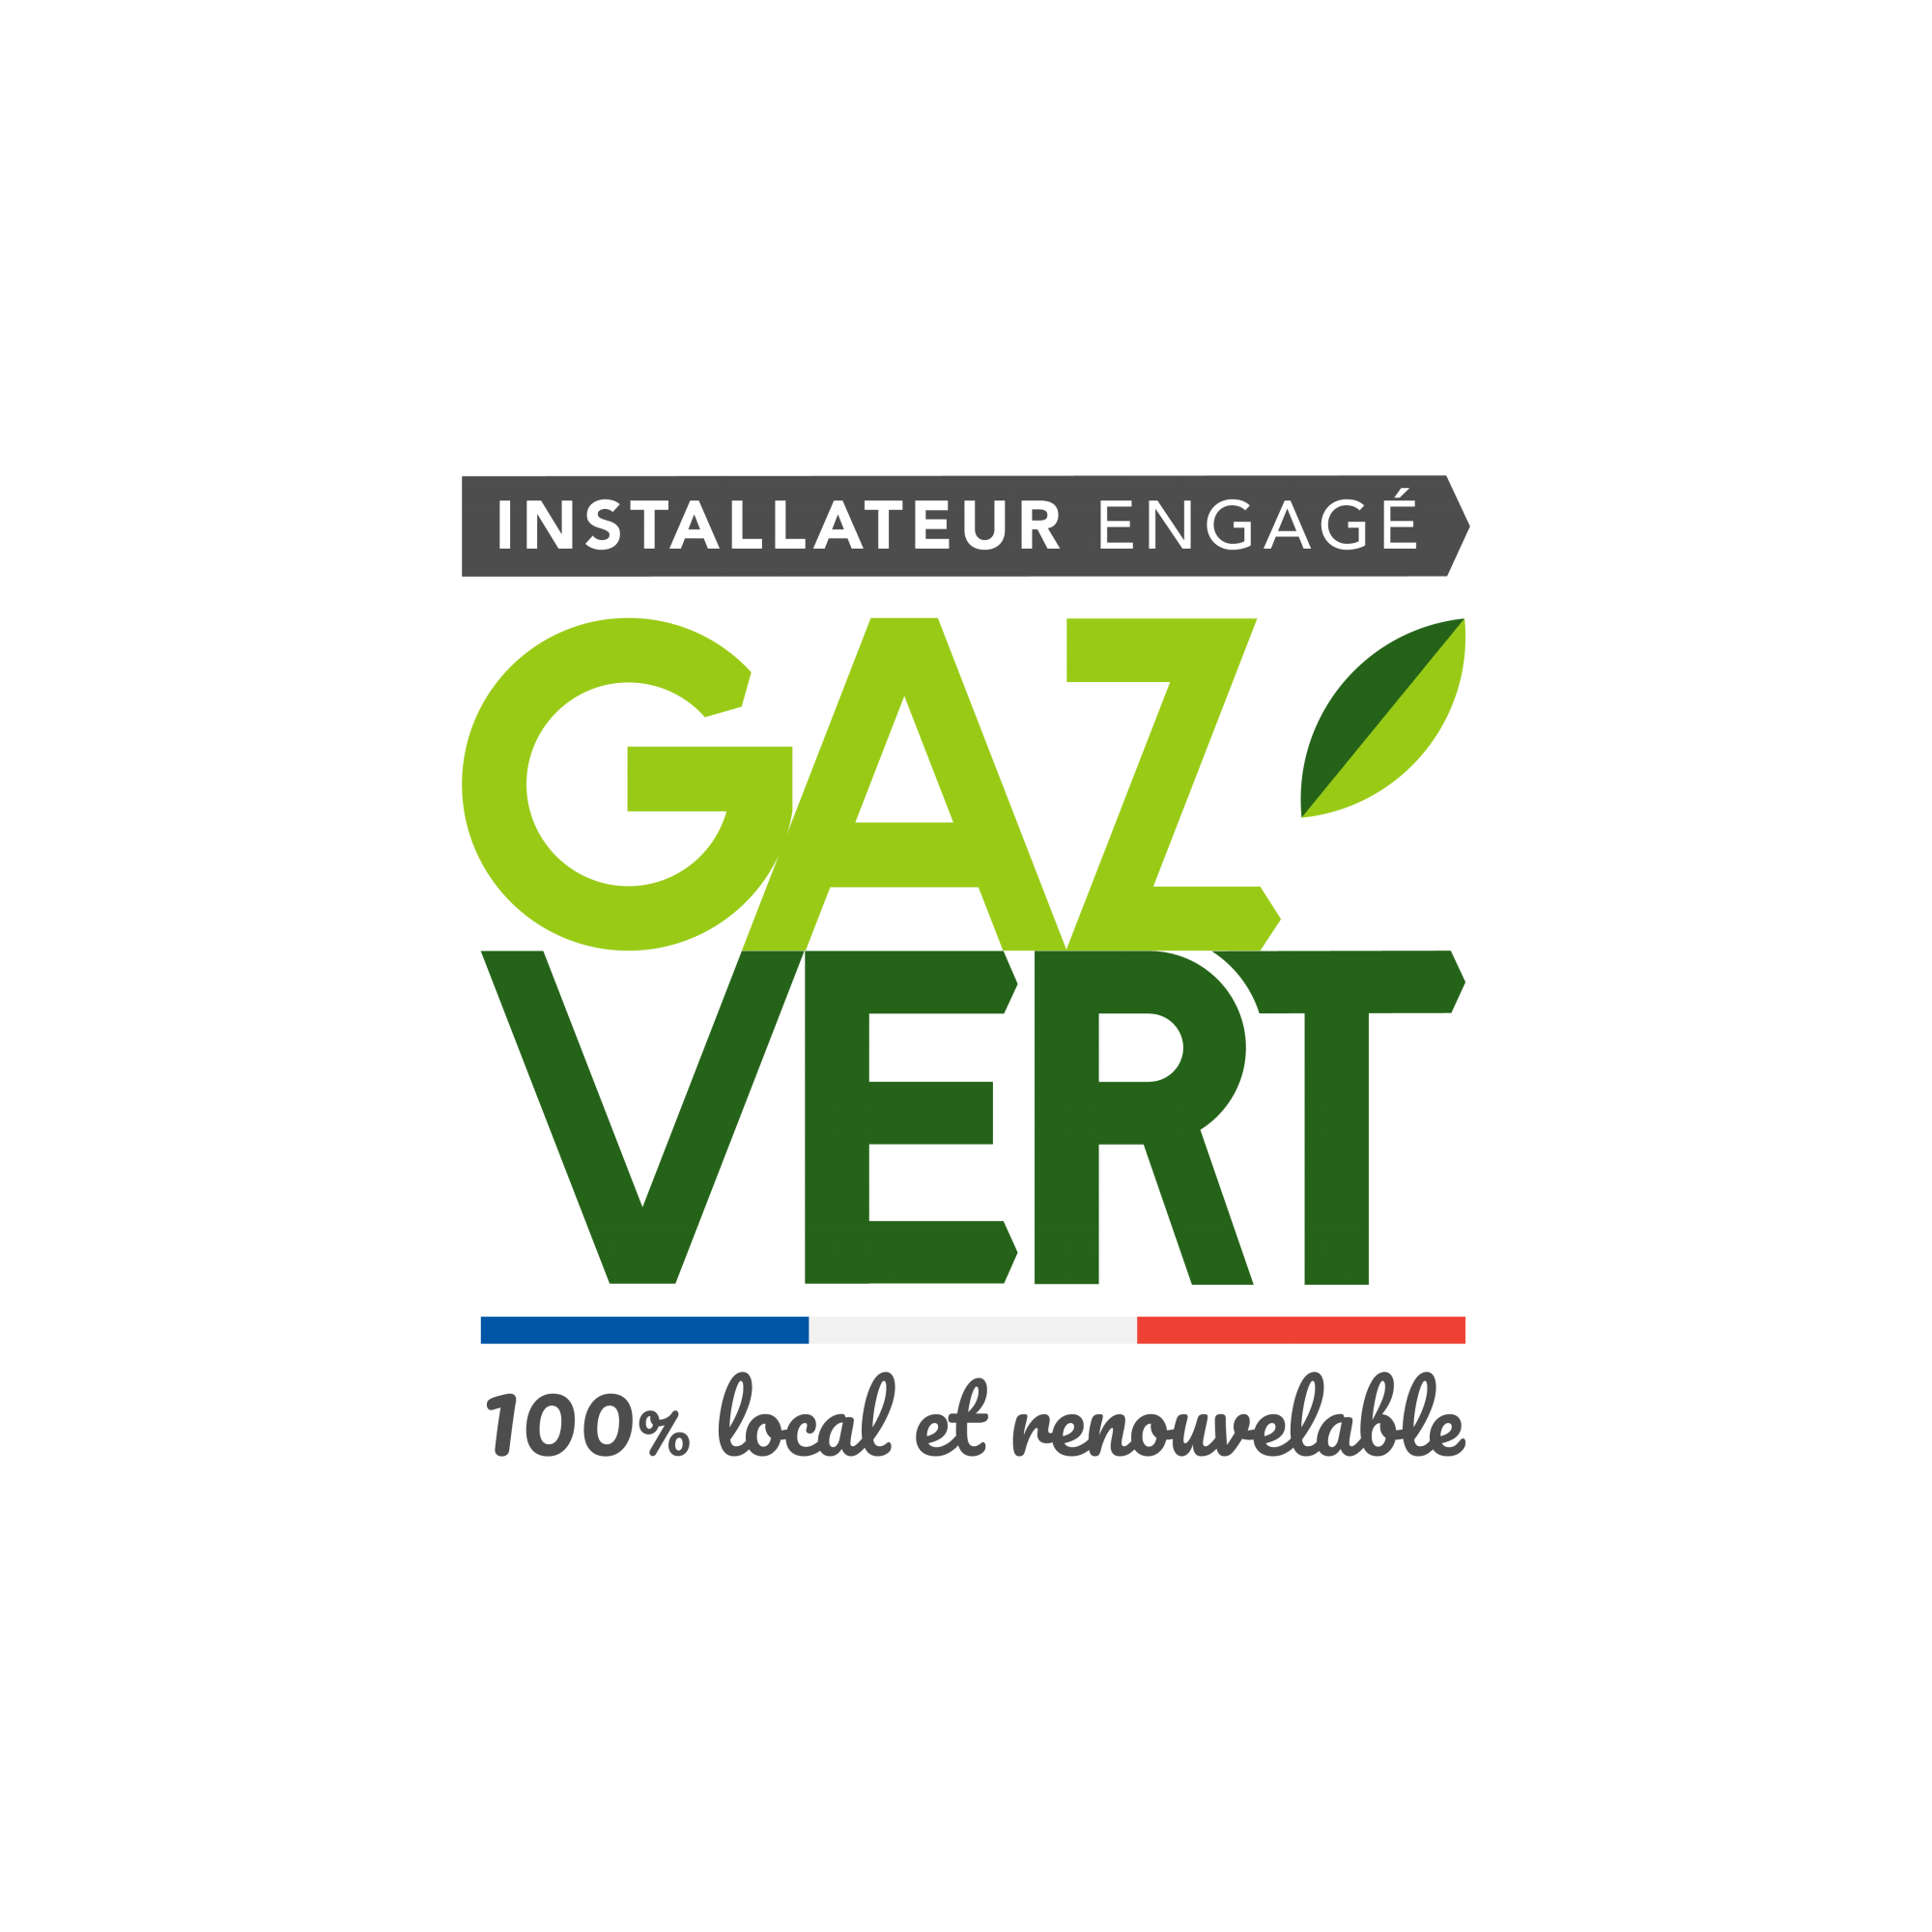 GRDF_LabelGazVert-installateur_clr